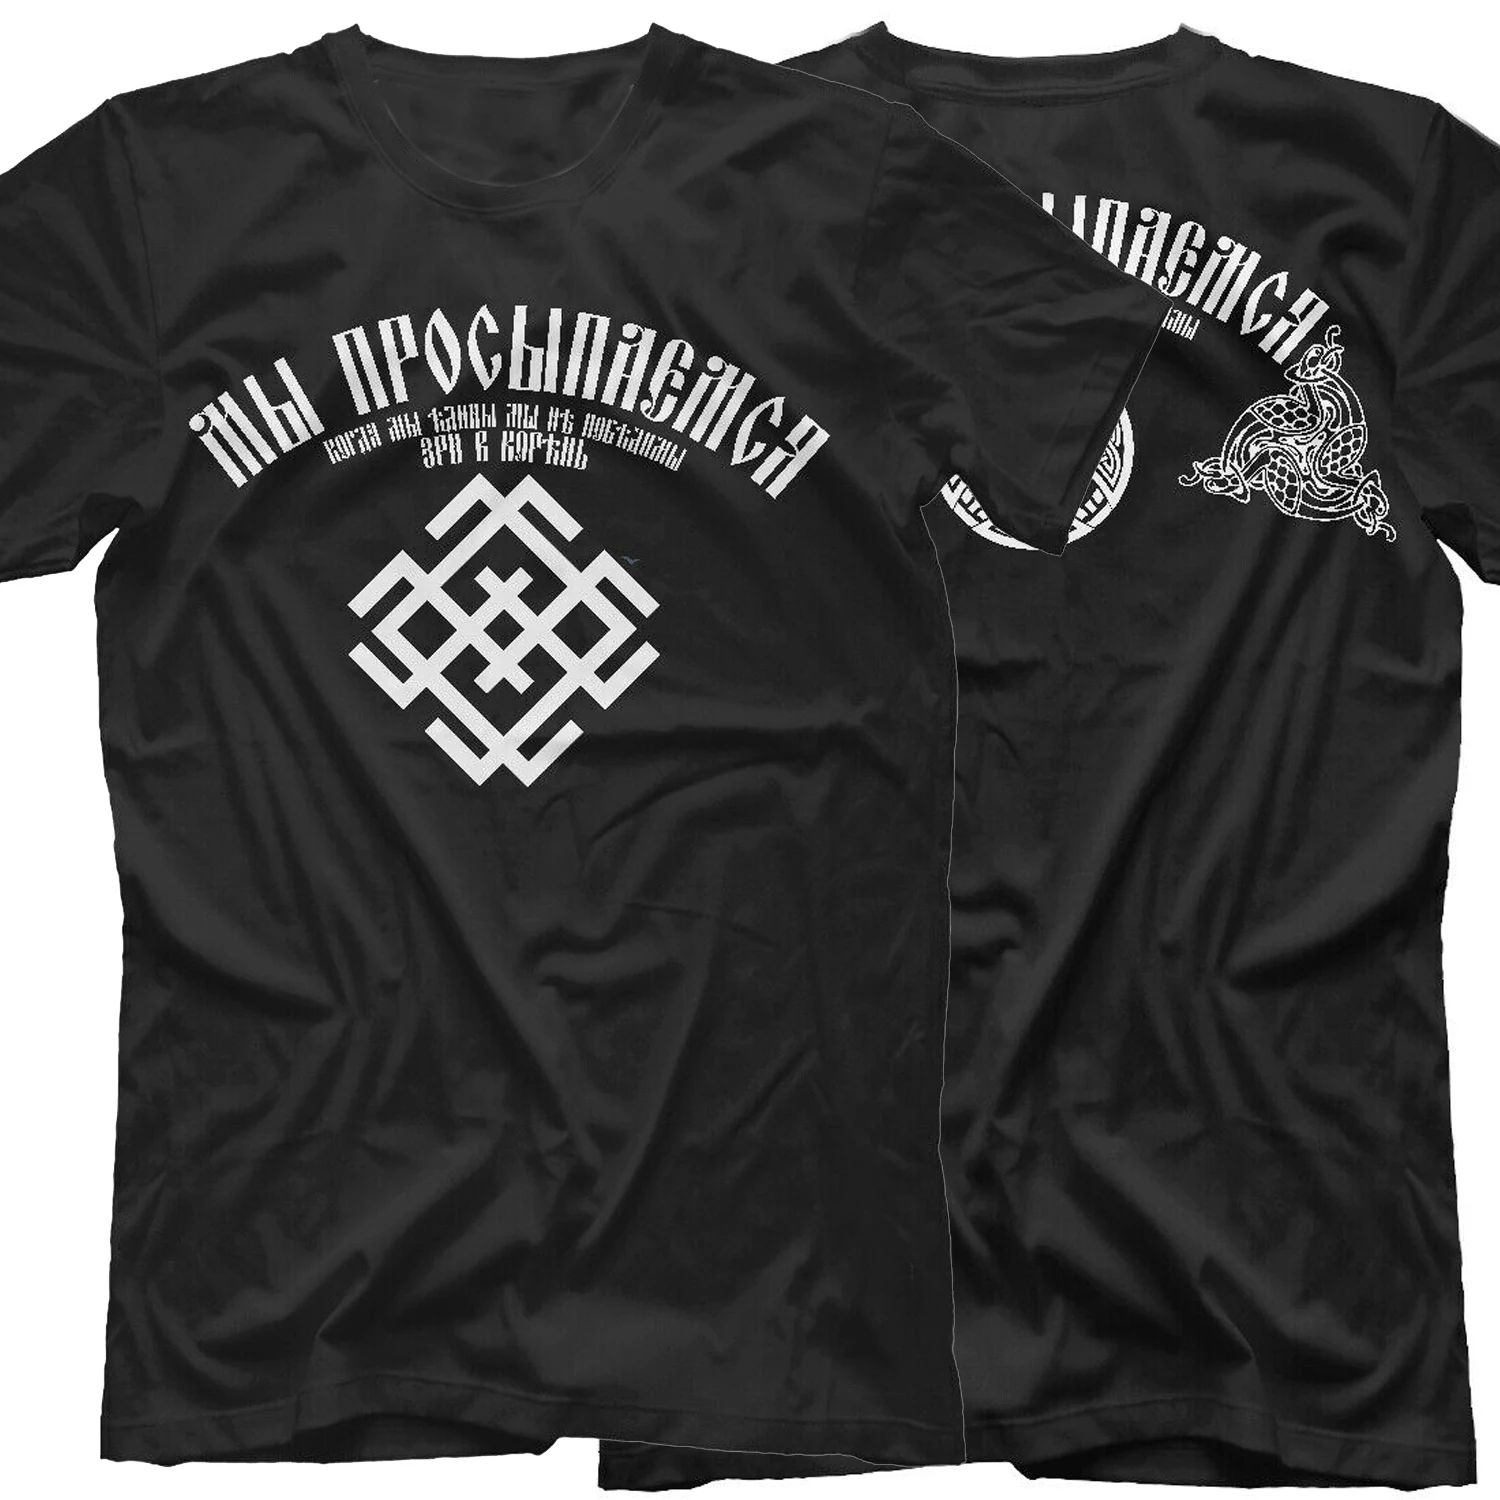 Nos despierta. Camiseta de diseño creativo de Rusia, eslavos, runas, ortopedia Camiseta de manga corta de algodón para hombre, camisa con cuello redondo, de verano, nueva S-3XL